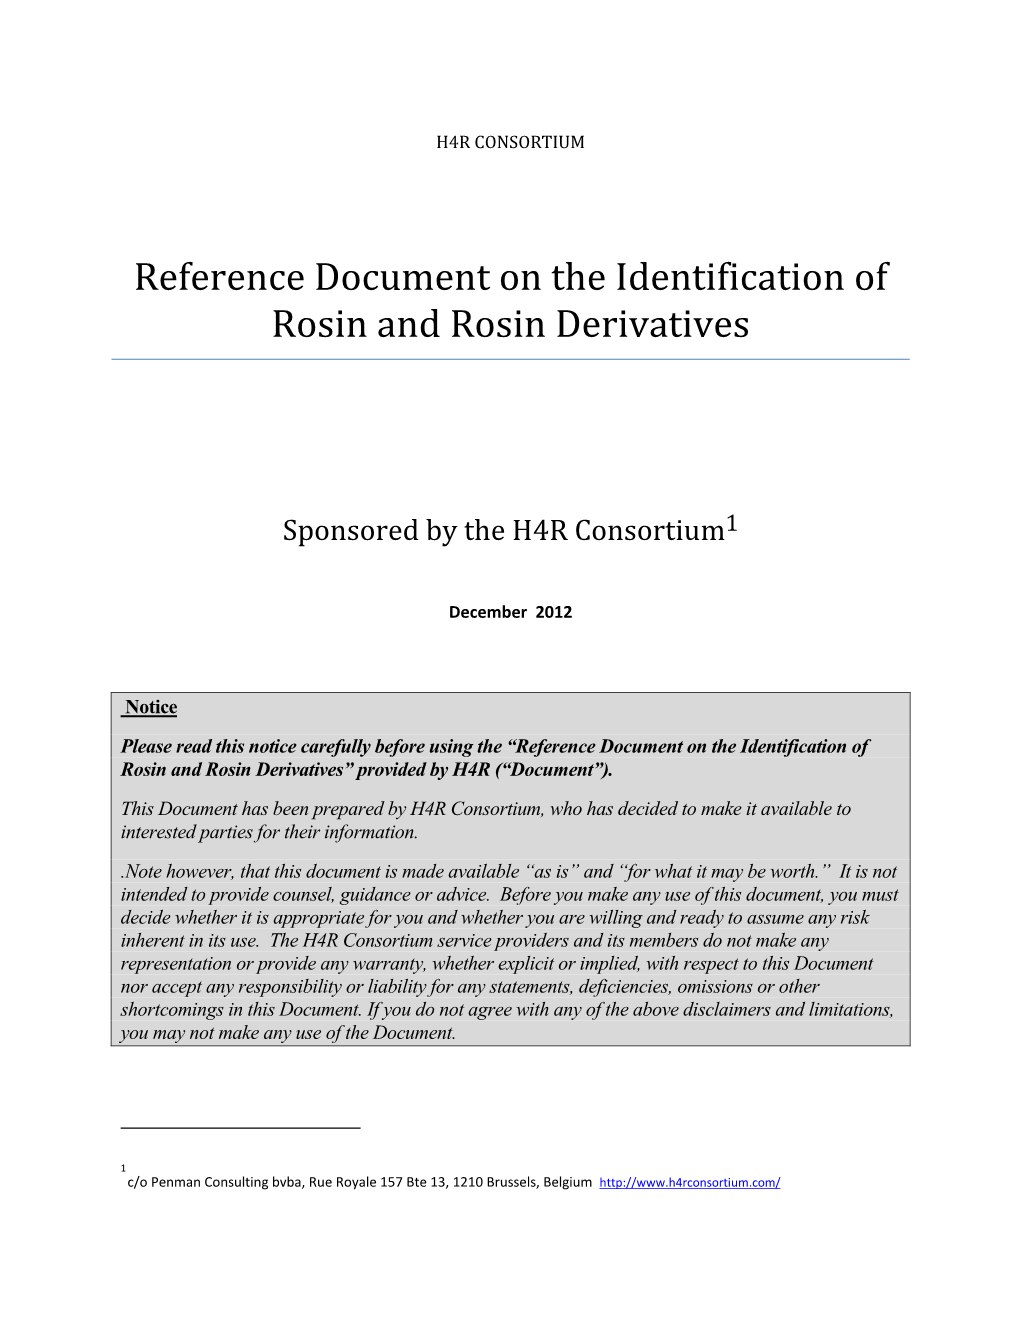 Identification of Rosin and Rosin Derivatives